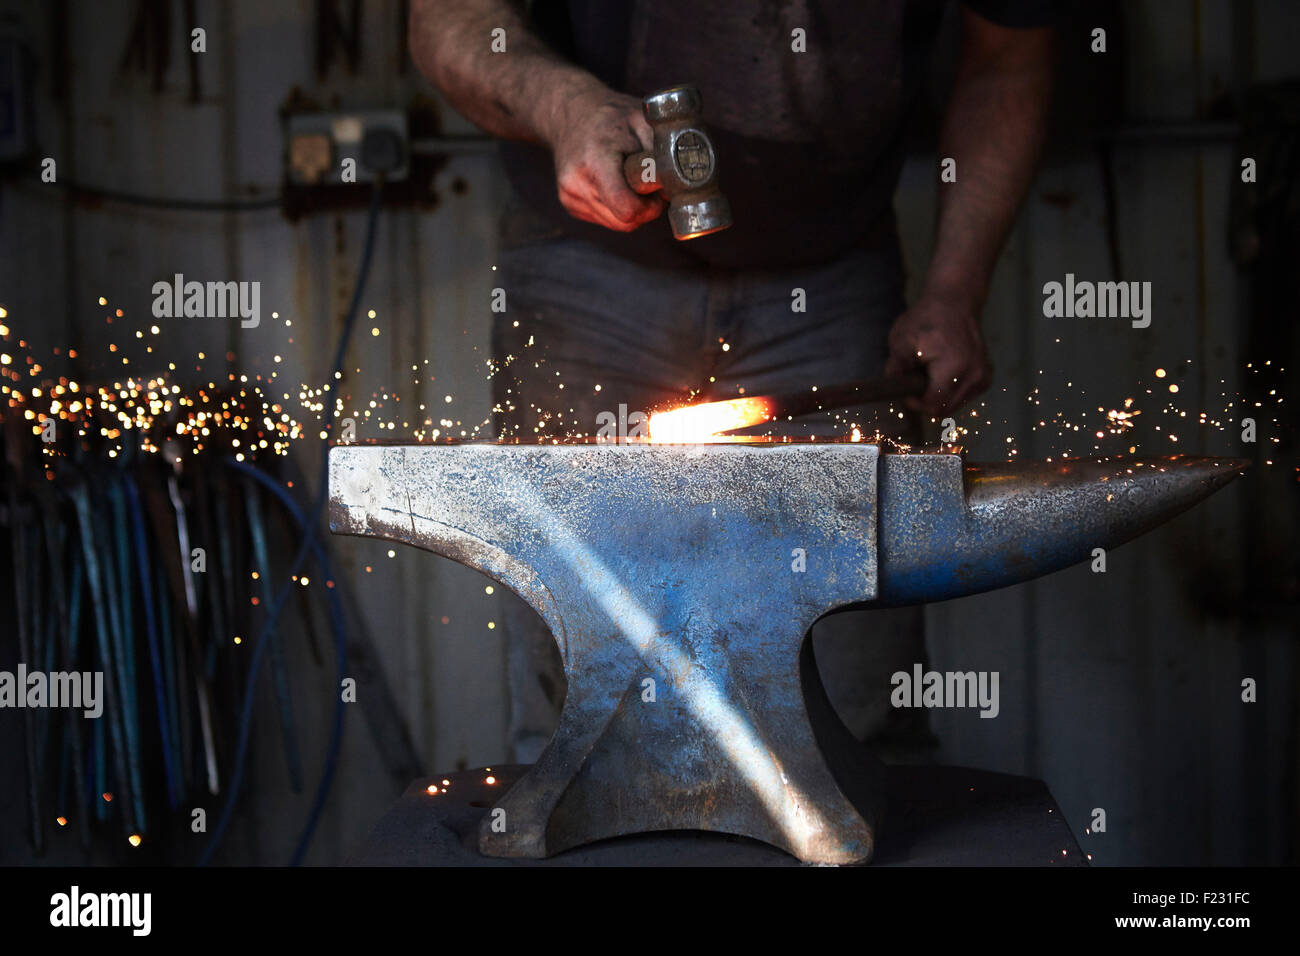 Un forgeron façonner un morceau de fer chaud sur l'enclume avec un marteau, avec des étincelles voler. Banque D'Images